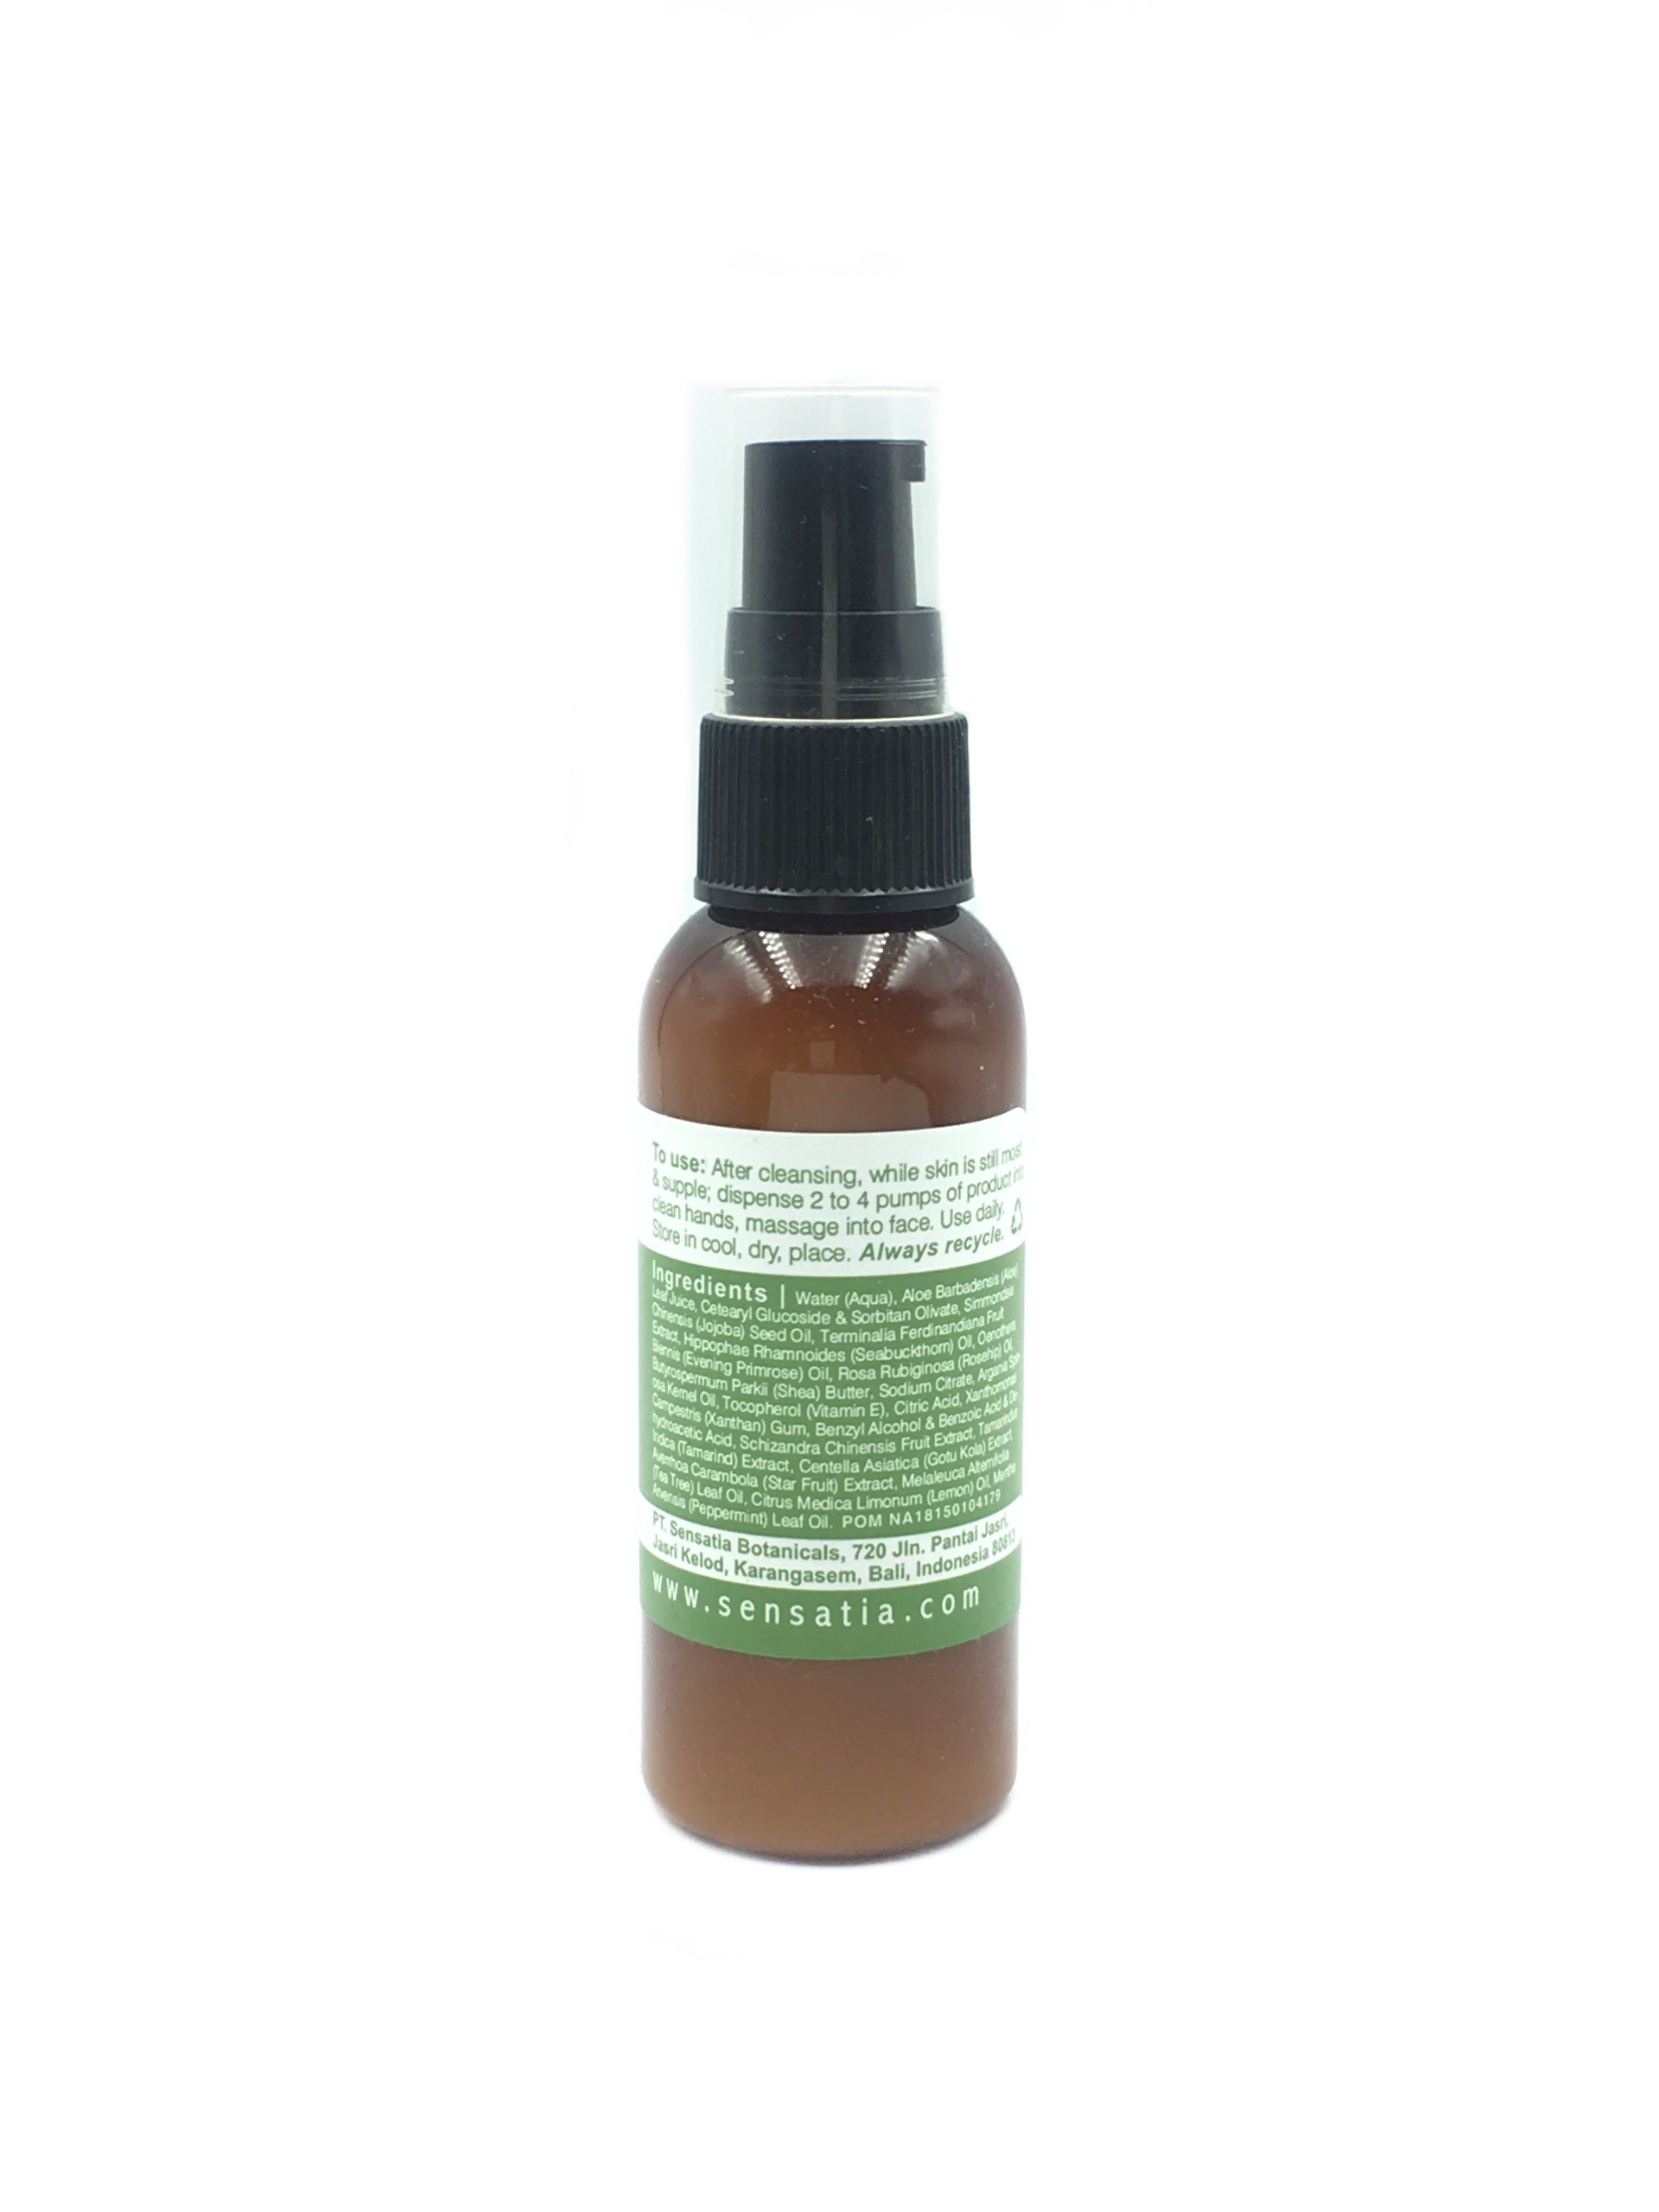 Sensatia Botanicals Daily Essentials Facial C-Serum Oily Acne Prone Skin Care